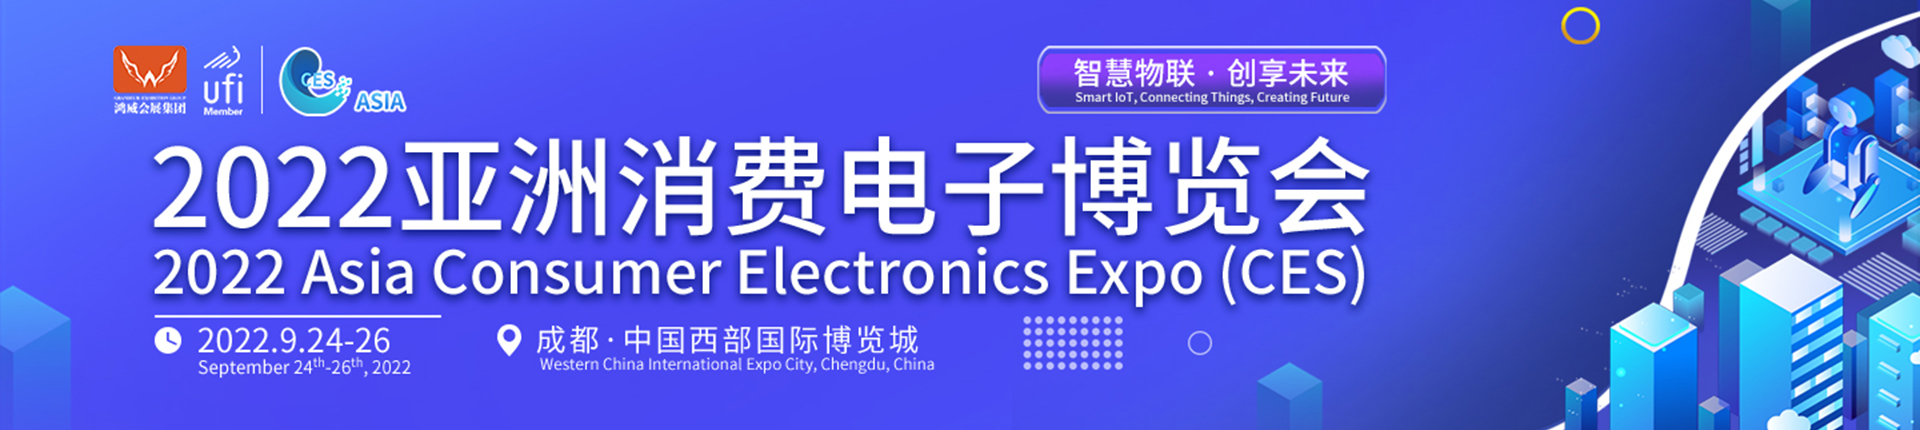 亚洲消费电子博览会